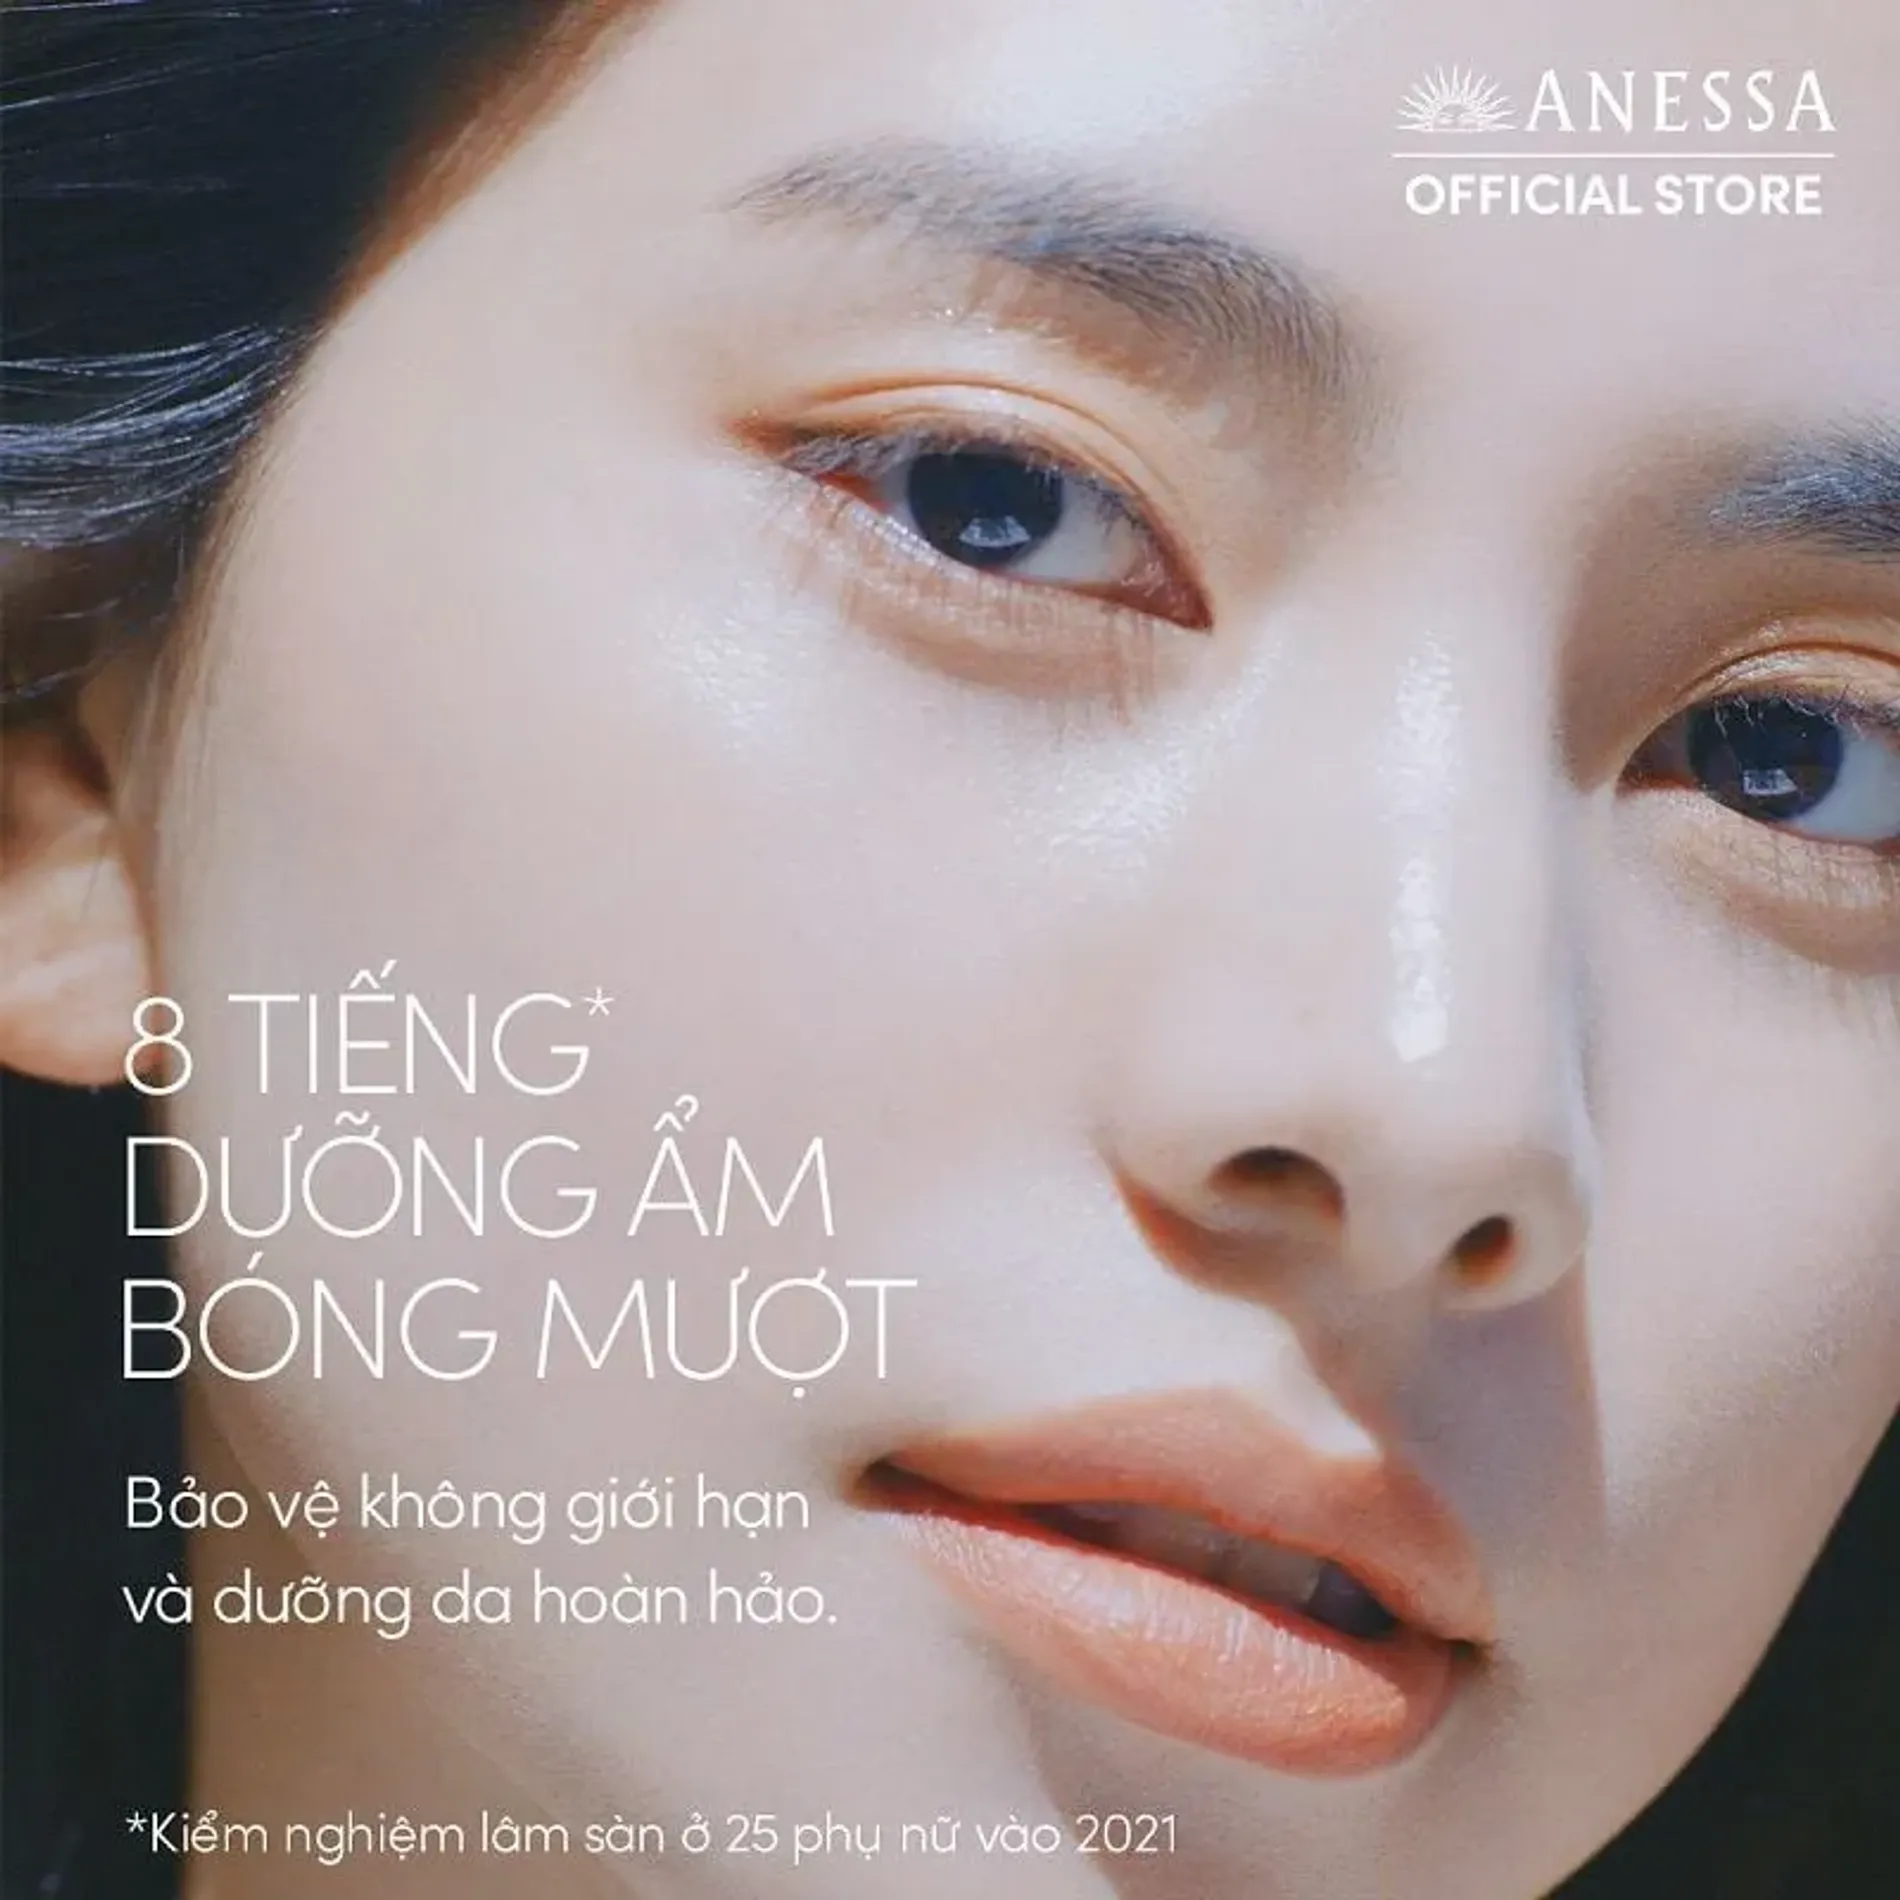 gel-chong-nang-duong-am-da-anessa-perfect-uv-sunscreen-skincare-gel-spf50-pa-90g-9